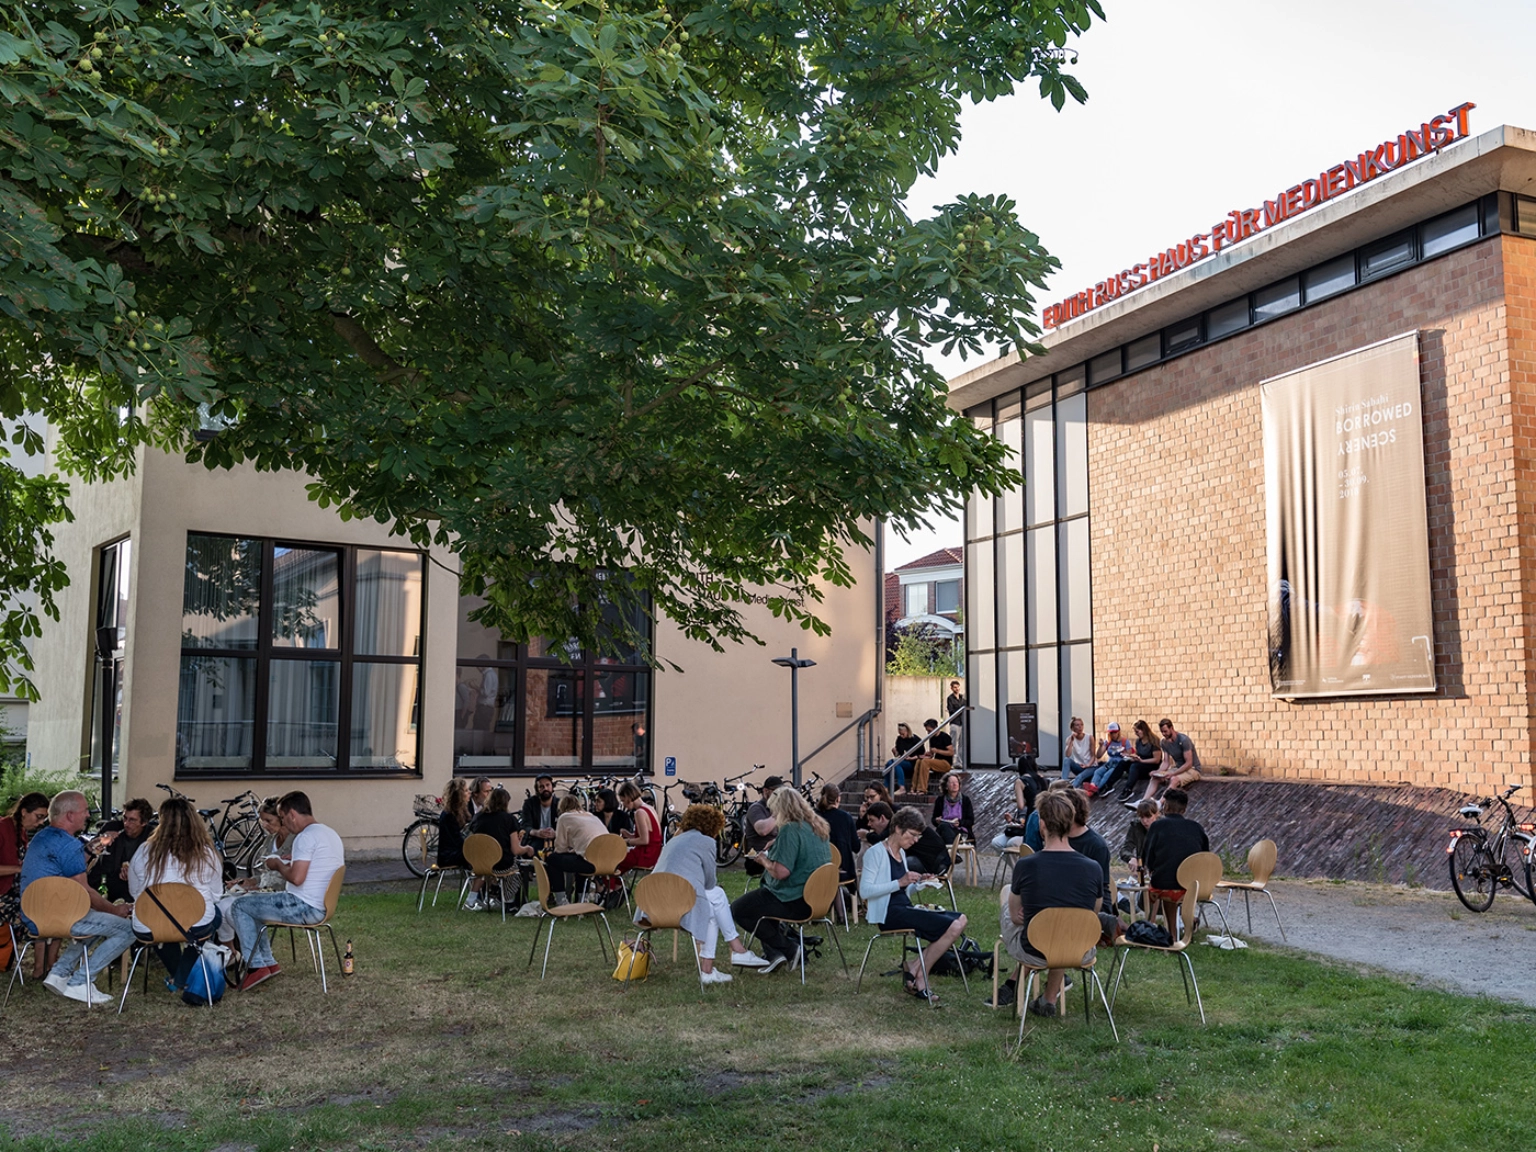 Impression des Edith-Russ-Haus für Medienkunst in Oldenburg – Menschen sitzen auf der Grünfläche vor dem Gebäude.